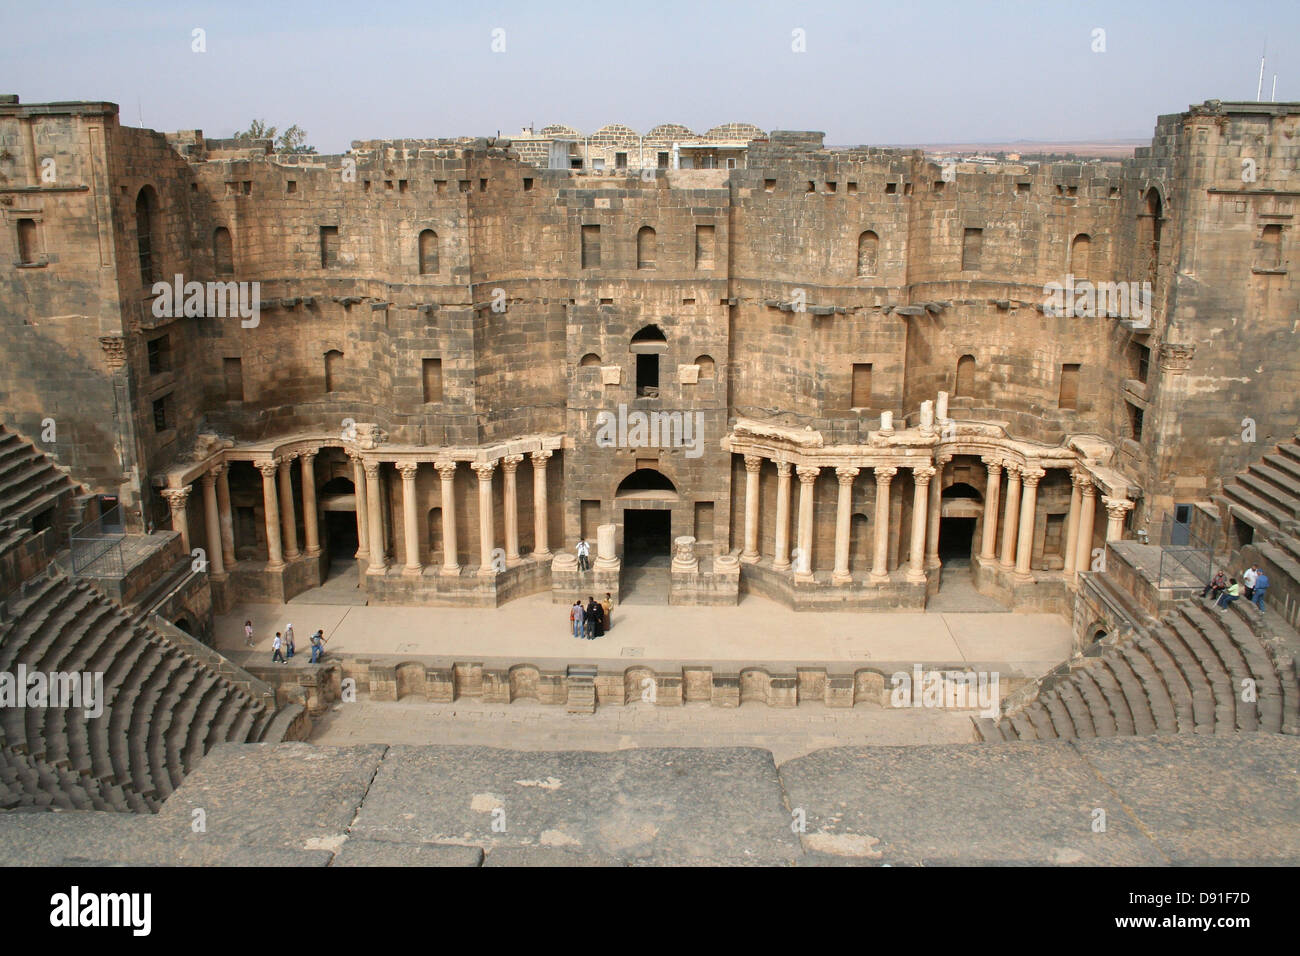 La siria bosra anfiteatro storico di storia Foto Stock